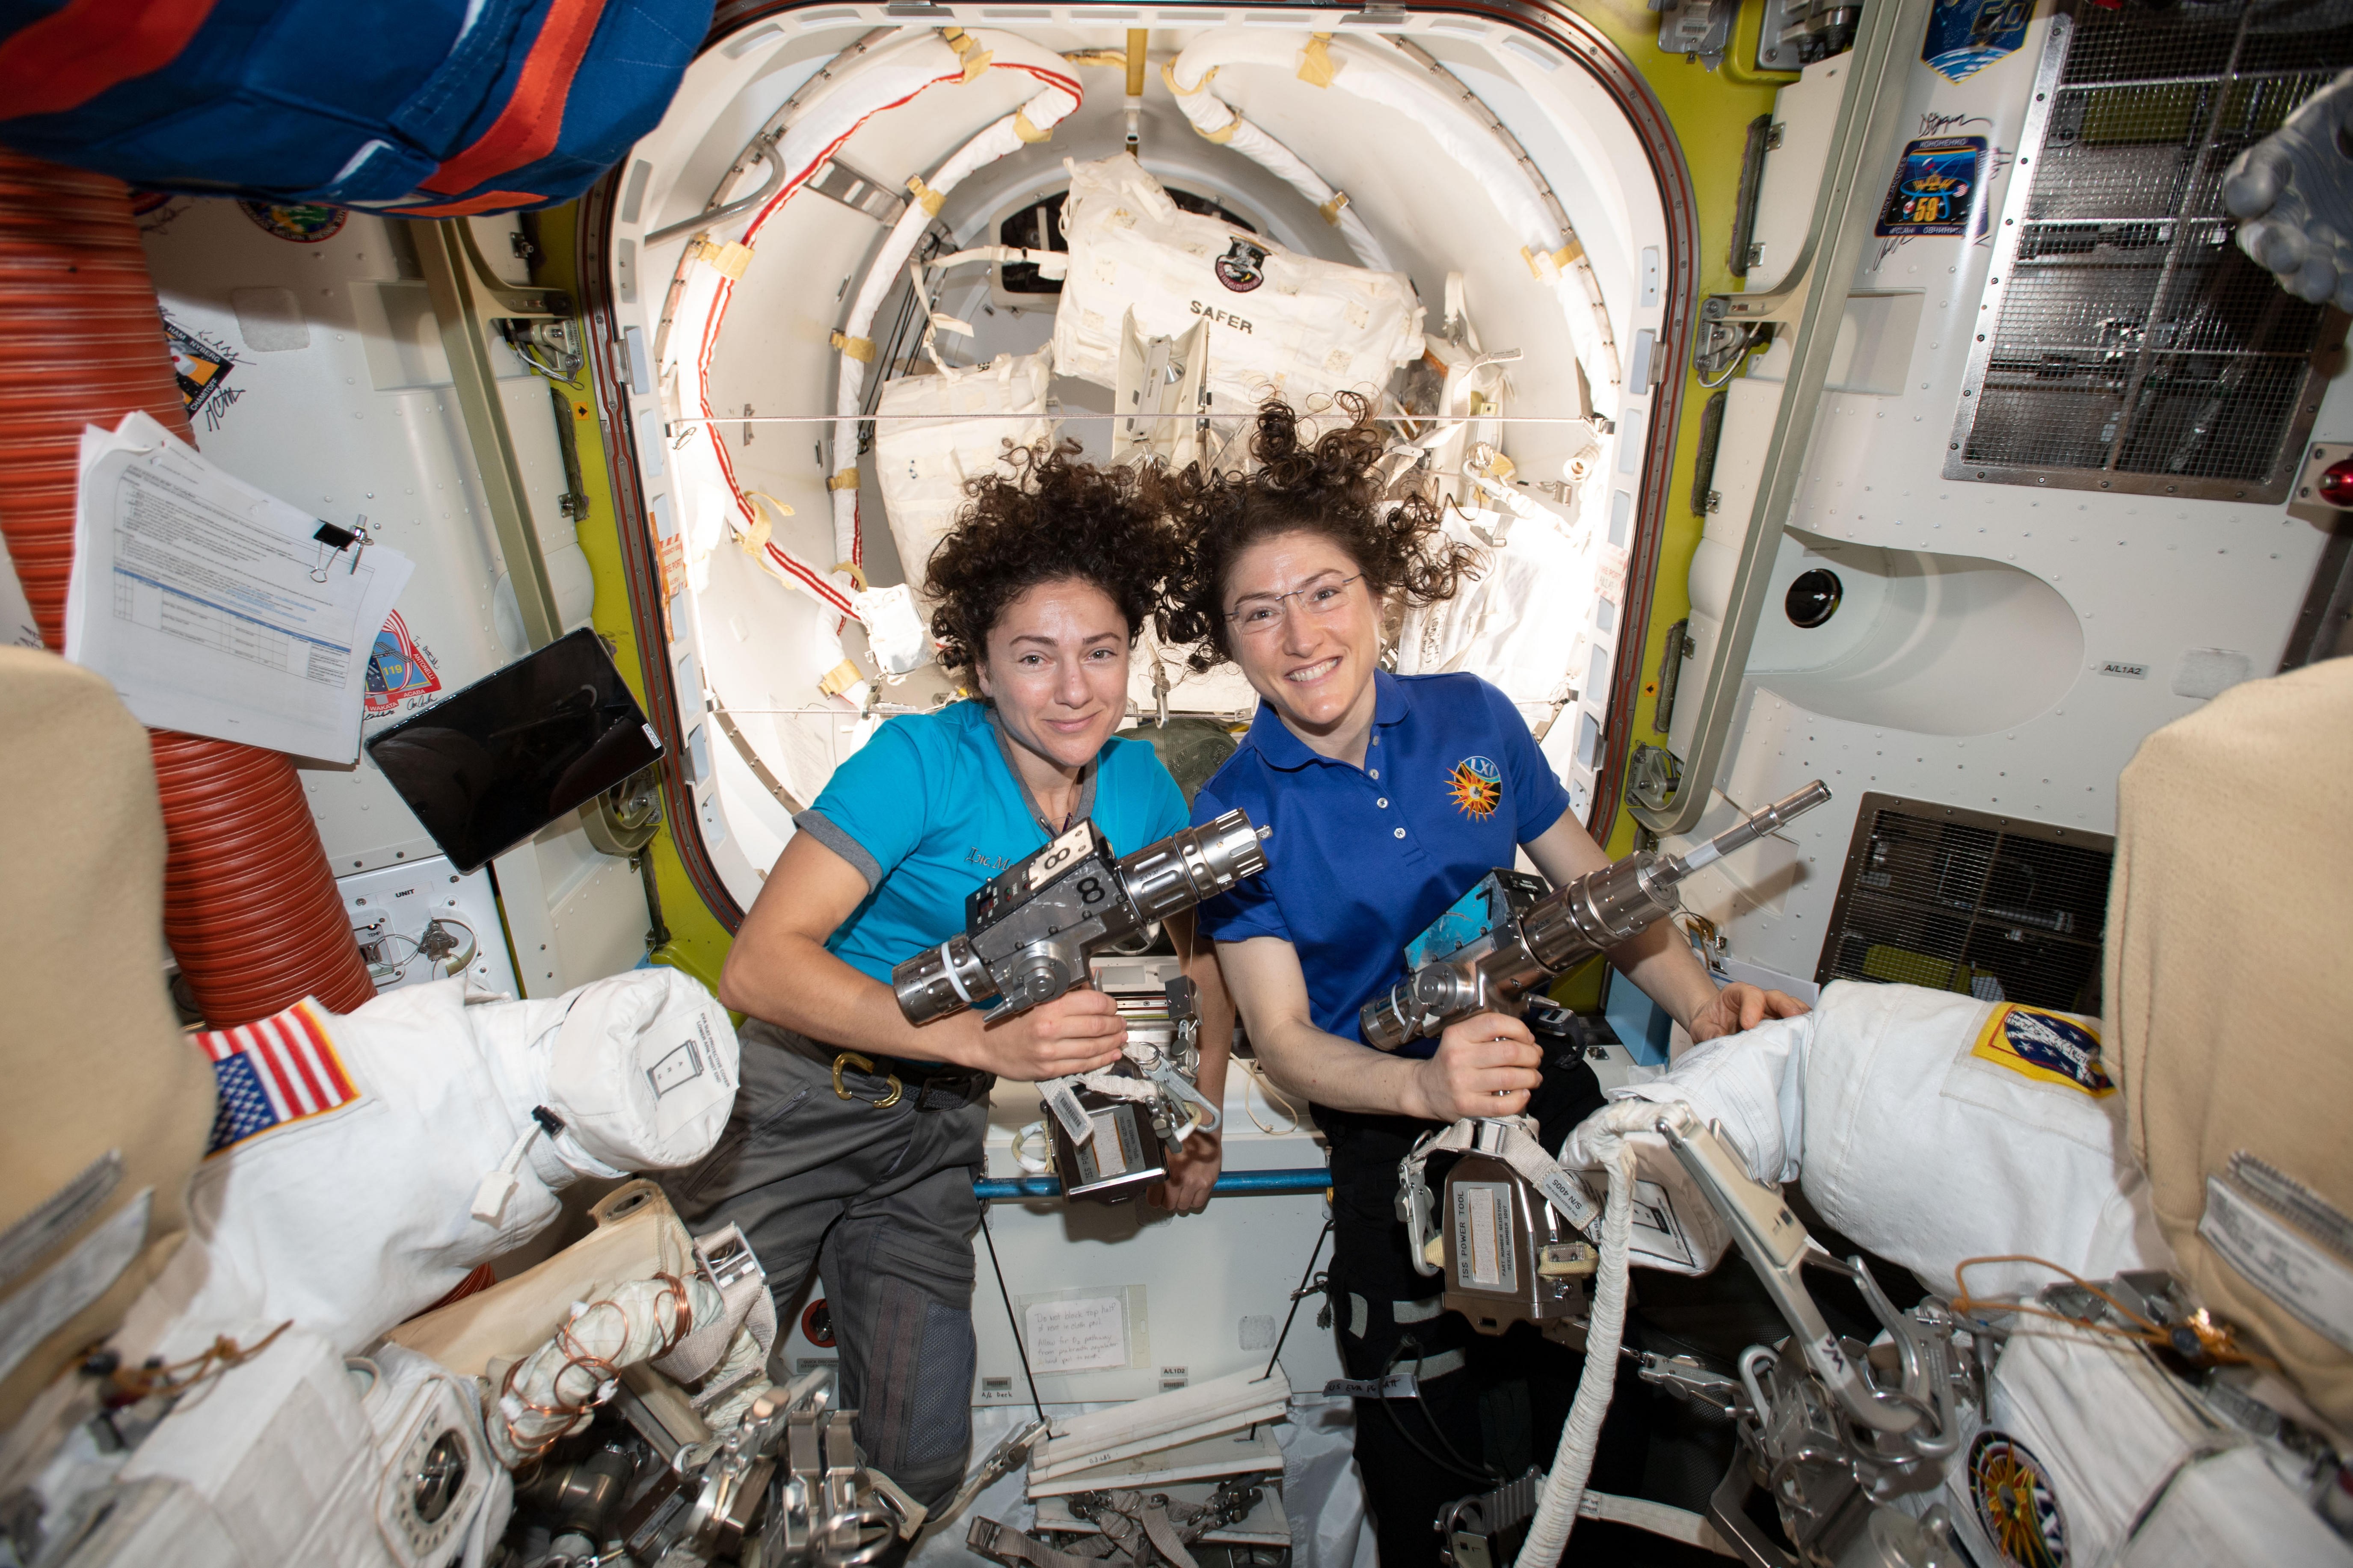 Astronautas hacen historia al realizar primera caminata espacial femenina (Video)